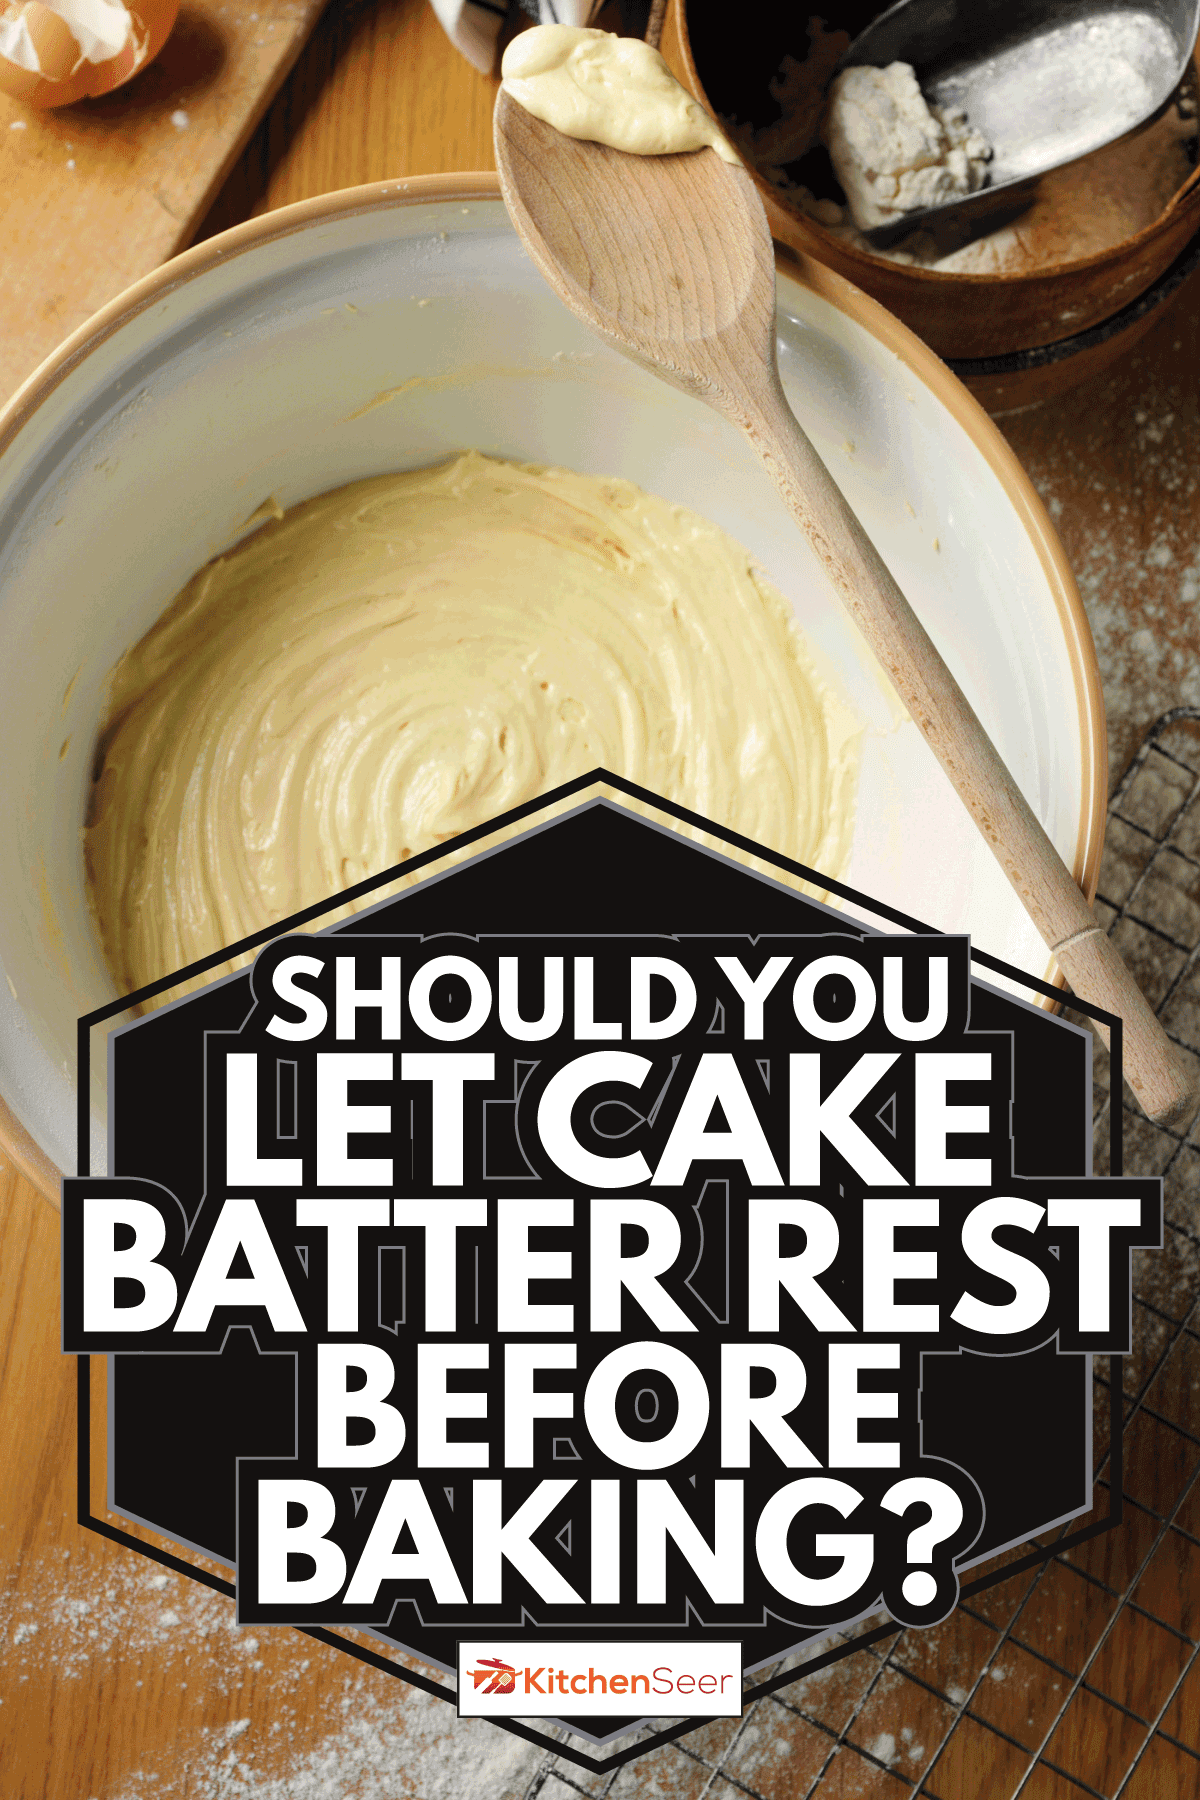 乡村破旧别致的烘焙用具与蛋糕混合物。烘焙前应该让蛋糕面糊休息吗